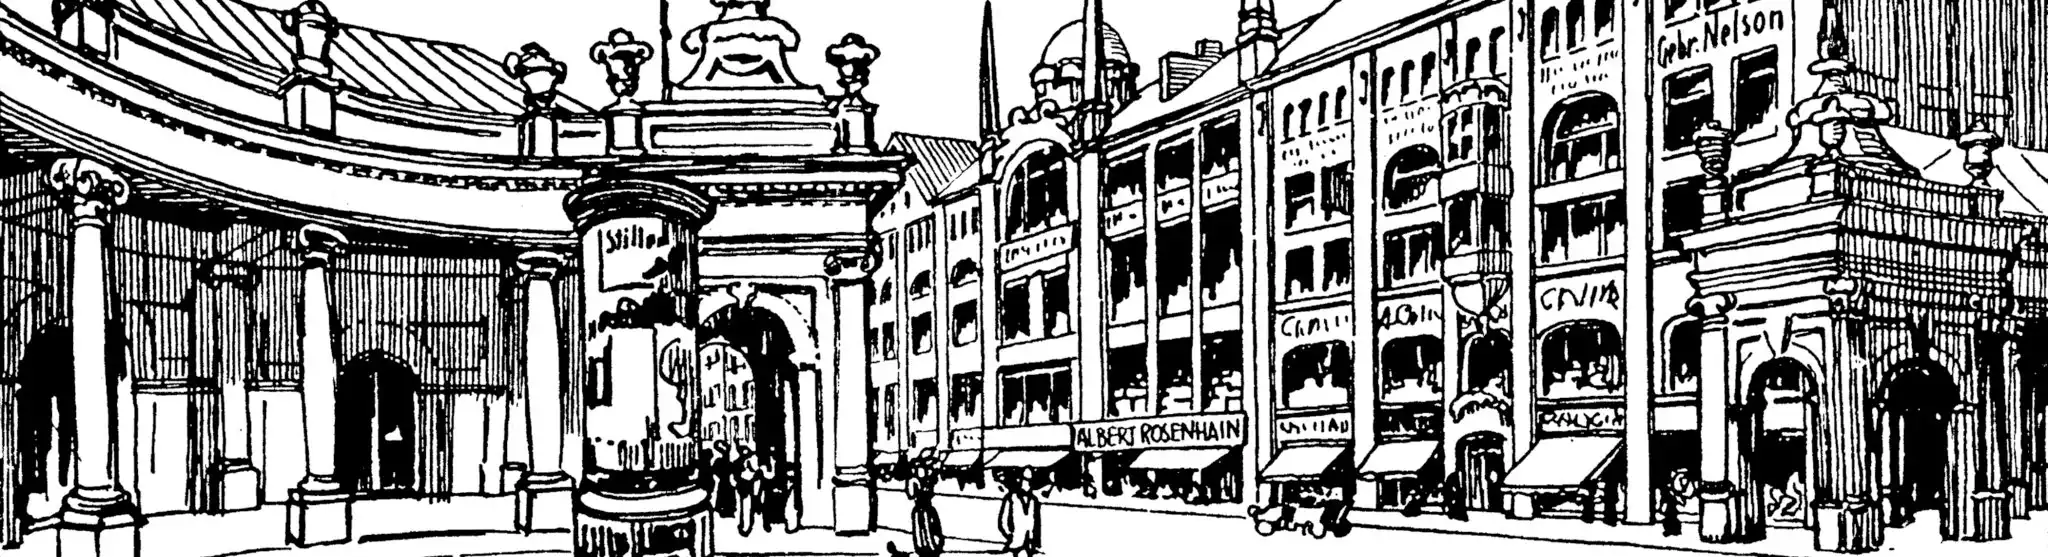 Donhoffplatz an der Leipziger Straße in berlin, 1914